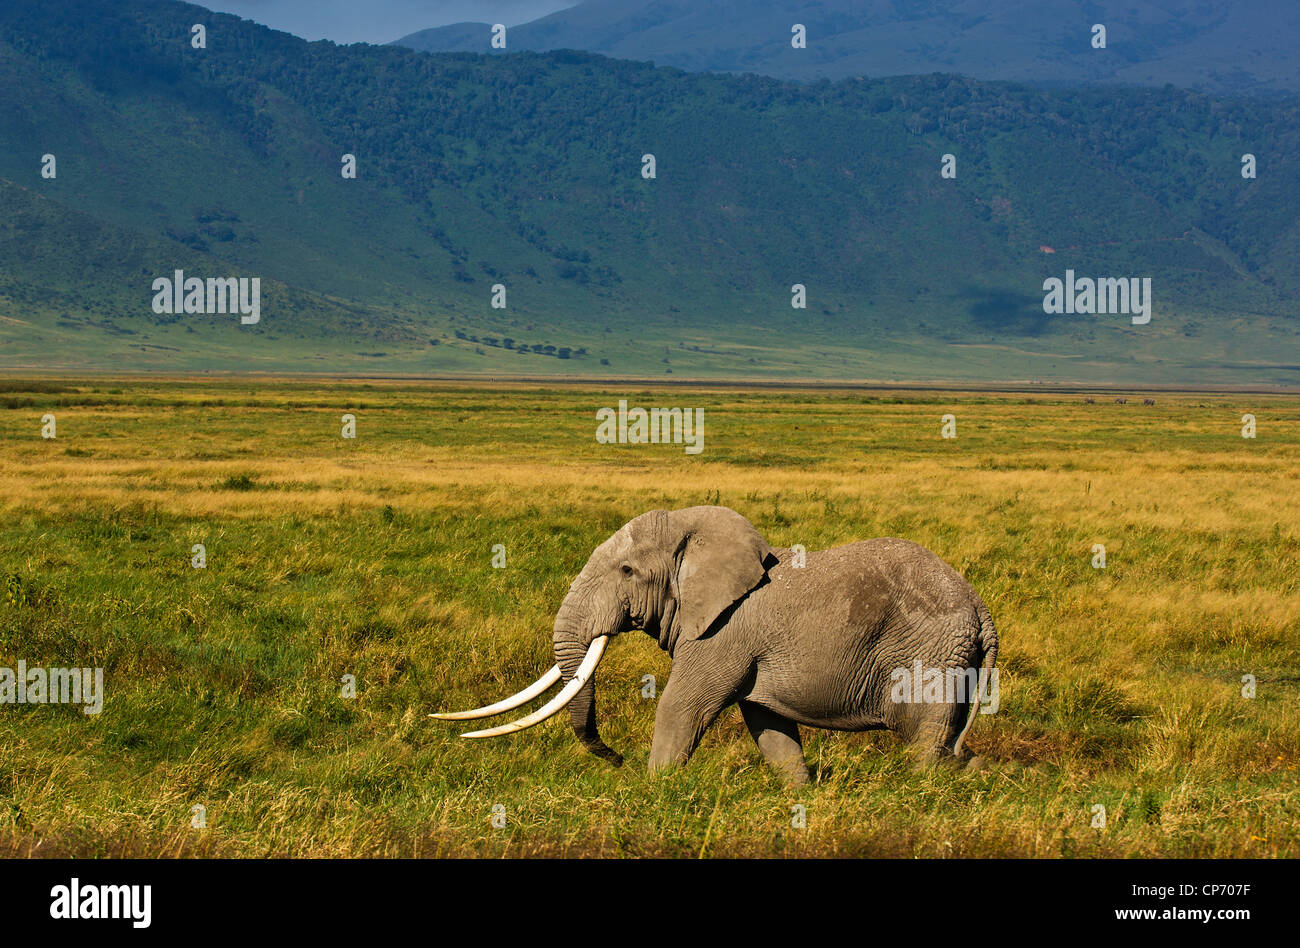 Bull Elefantenbullen mit riesigen Stoßzähnen auf dem Boden des Kraters. Dieser Stier geht durch den Namen von Babu - KiSwahili für Vater. Stockfoto